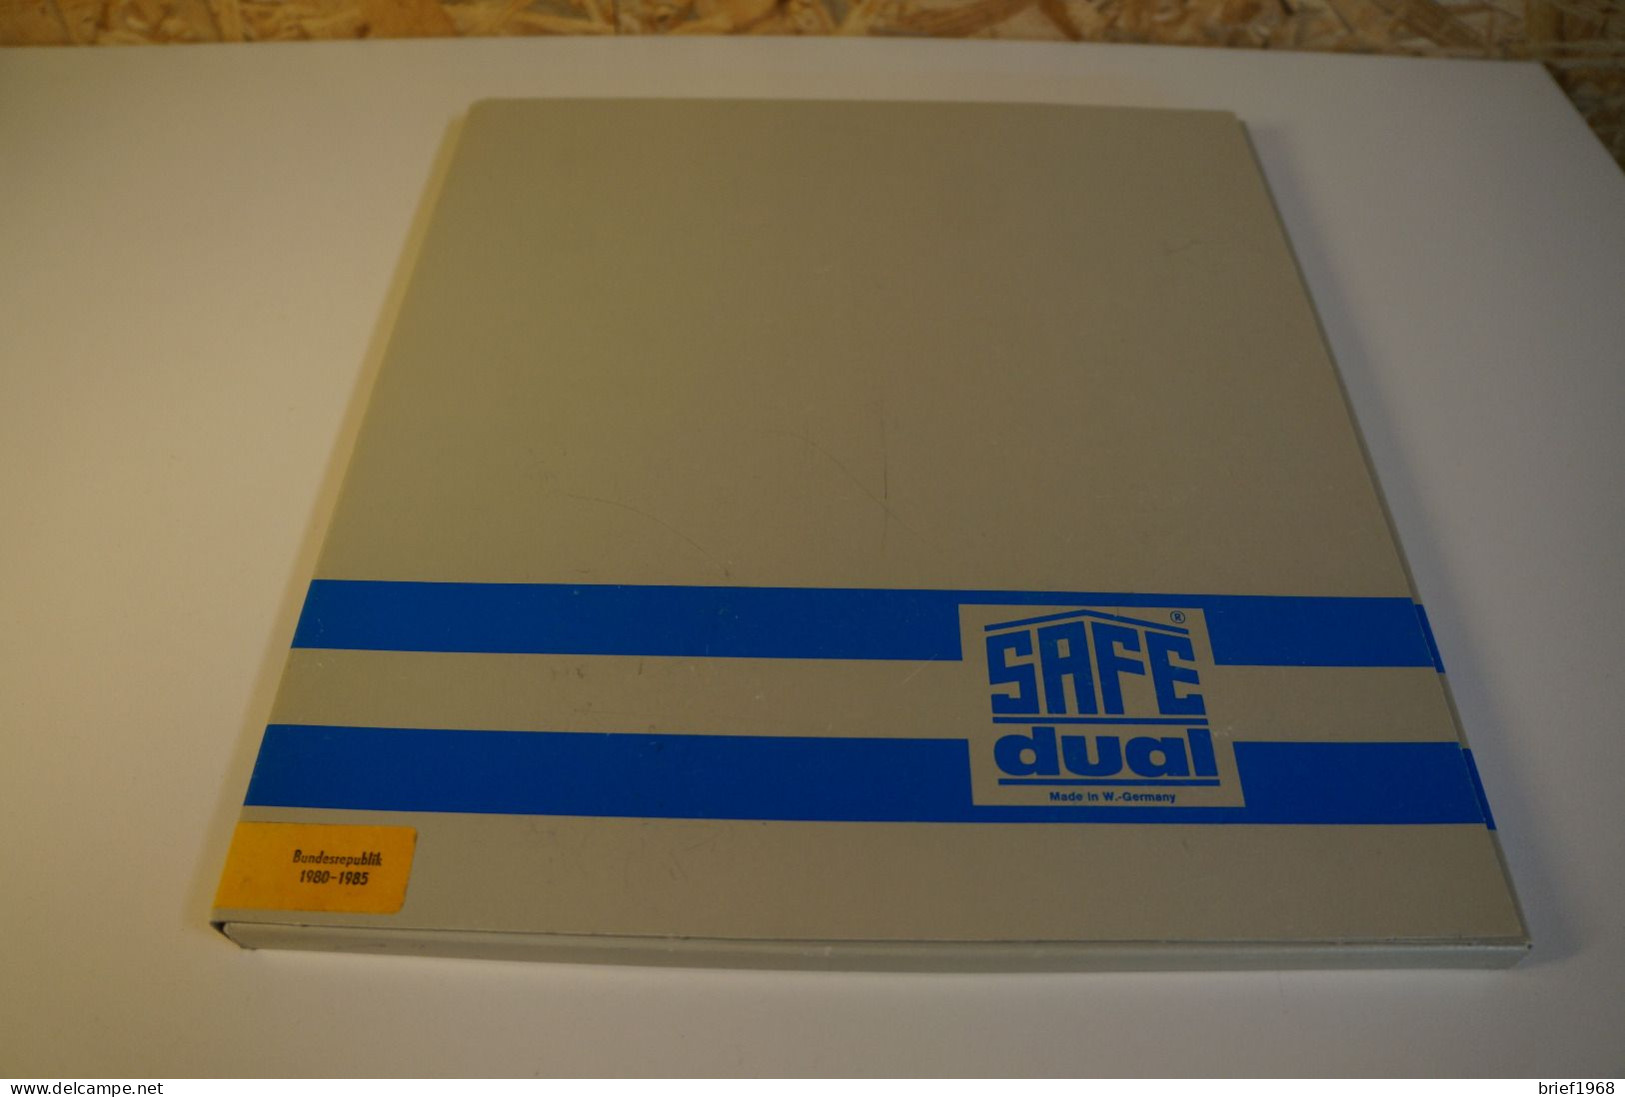 Bund Safe Dual 1980-1985 (27964) - Vordruckblätter